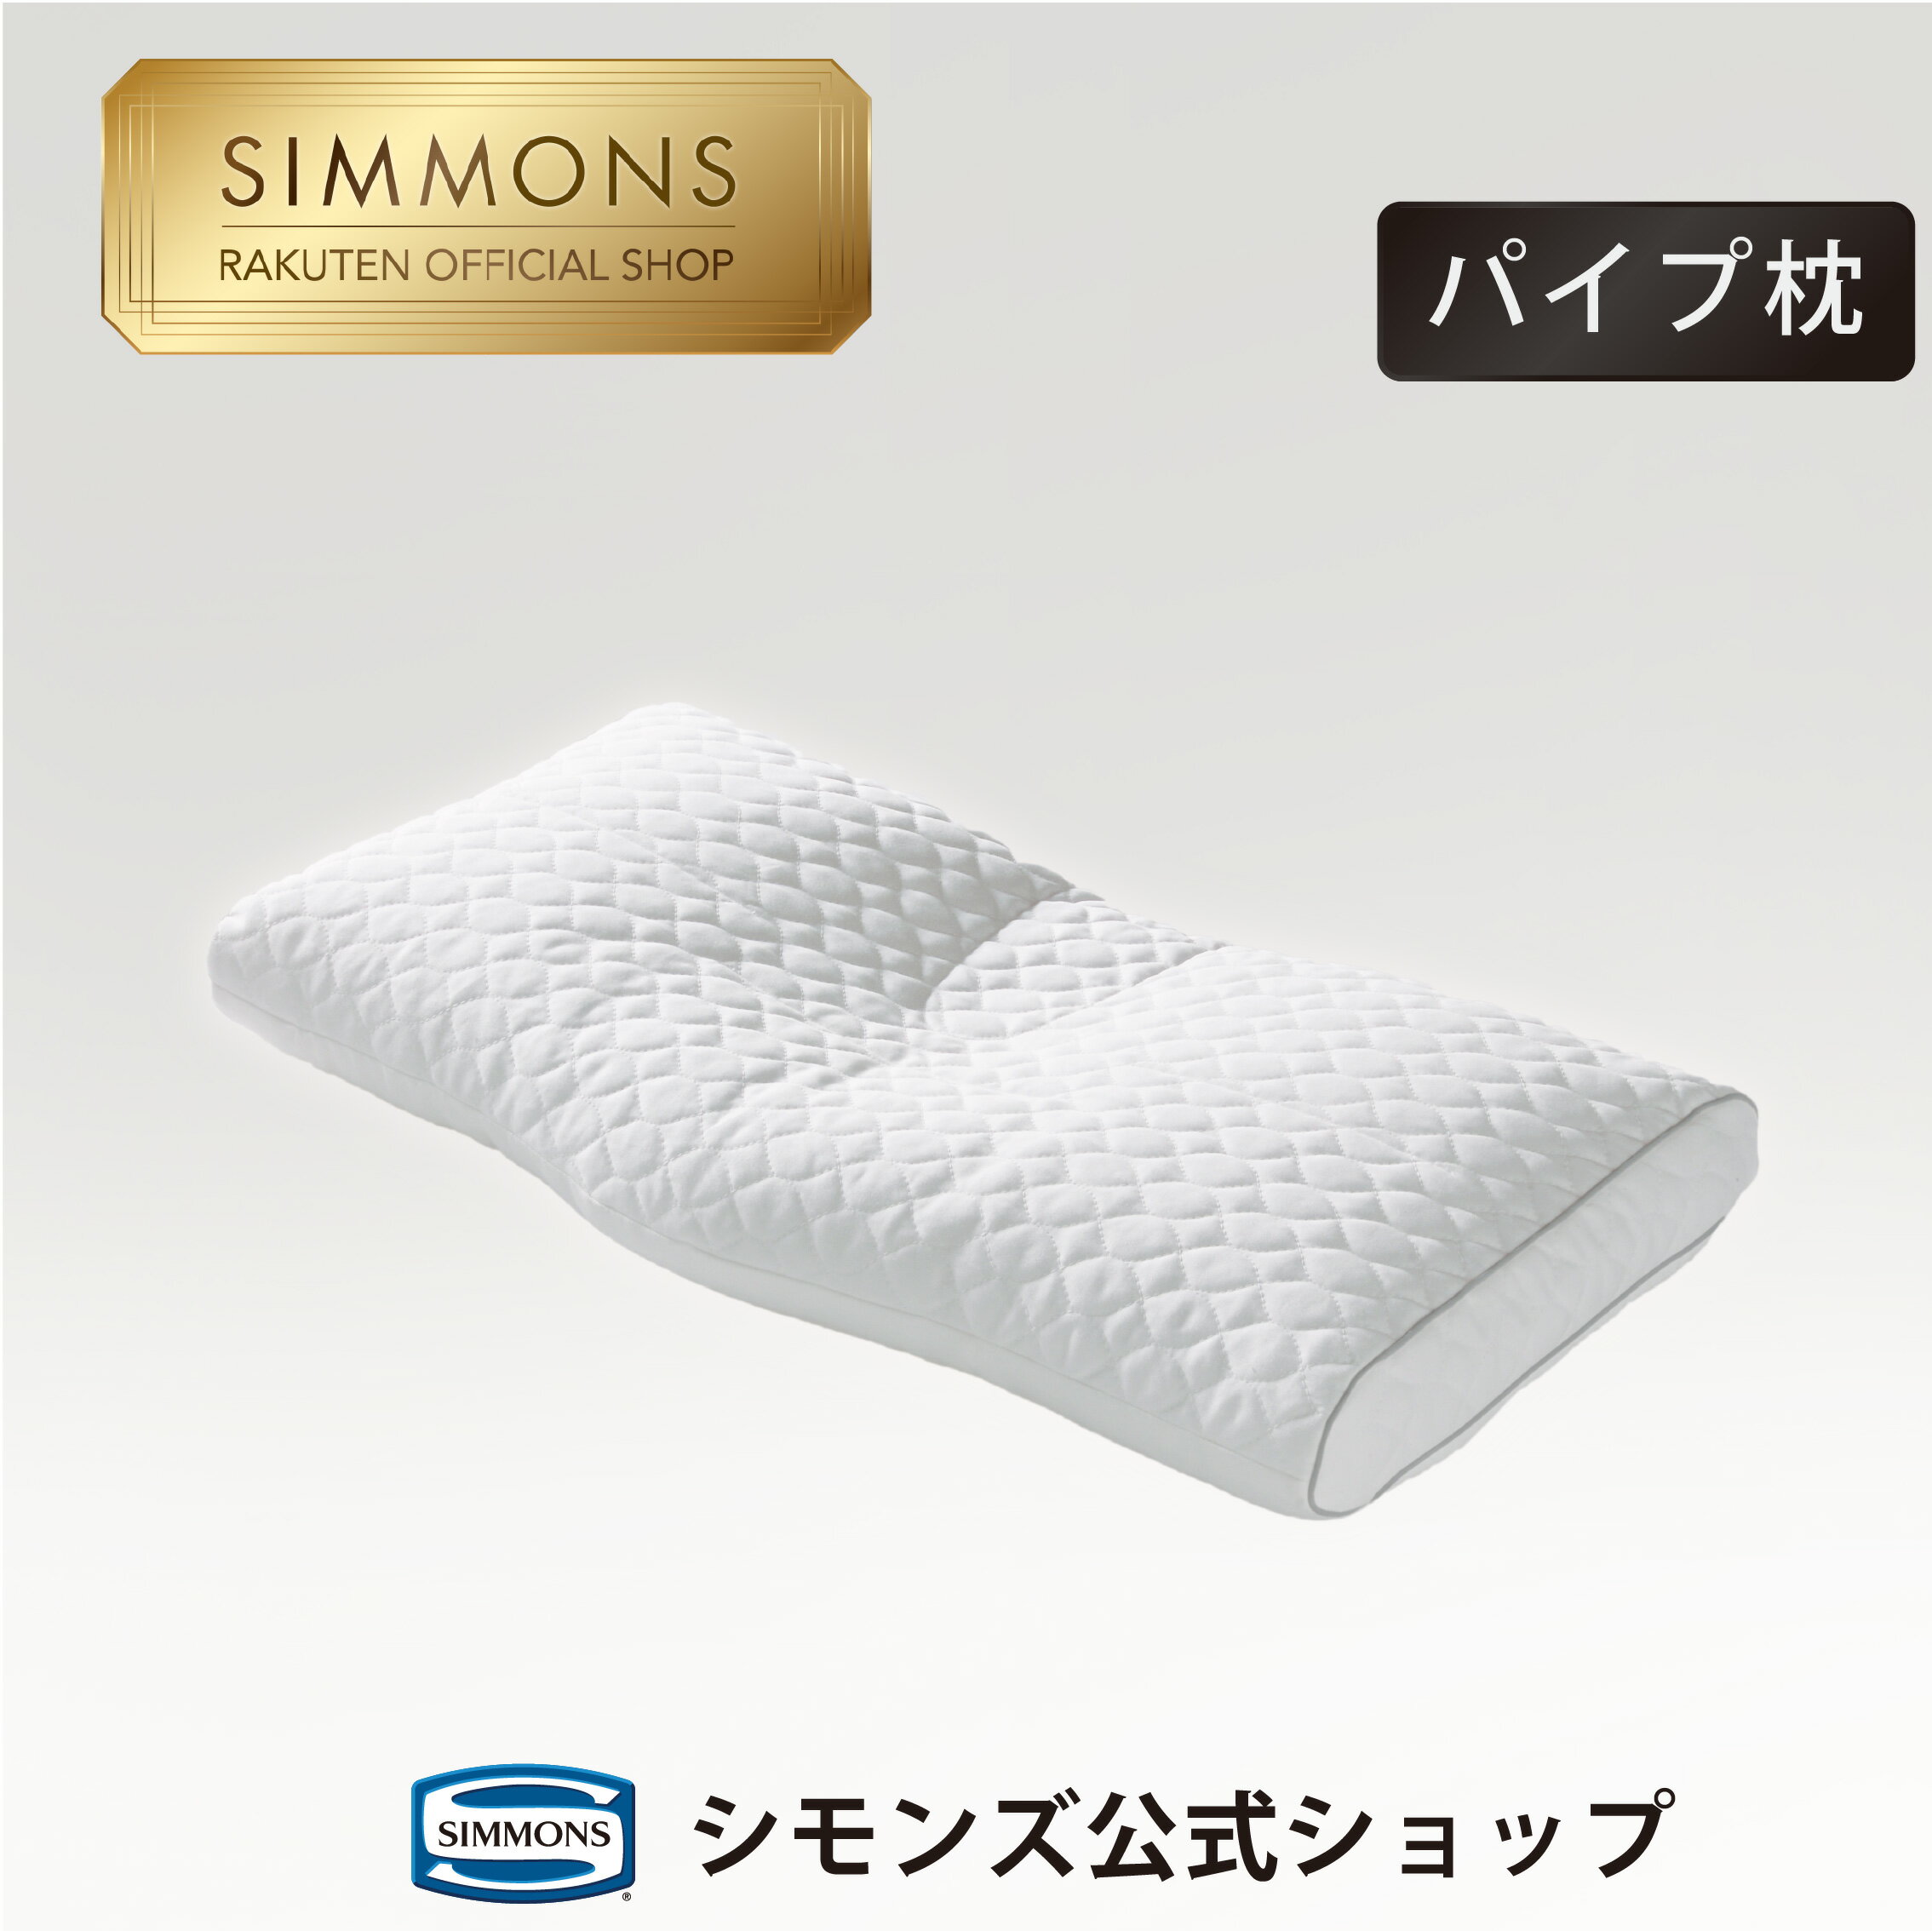 シモンズ 枕 【シモンズ公式】音がしない静かなるパイプ枕。ファームスリープピロー LD200